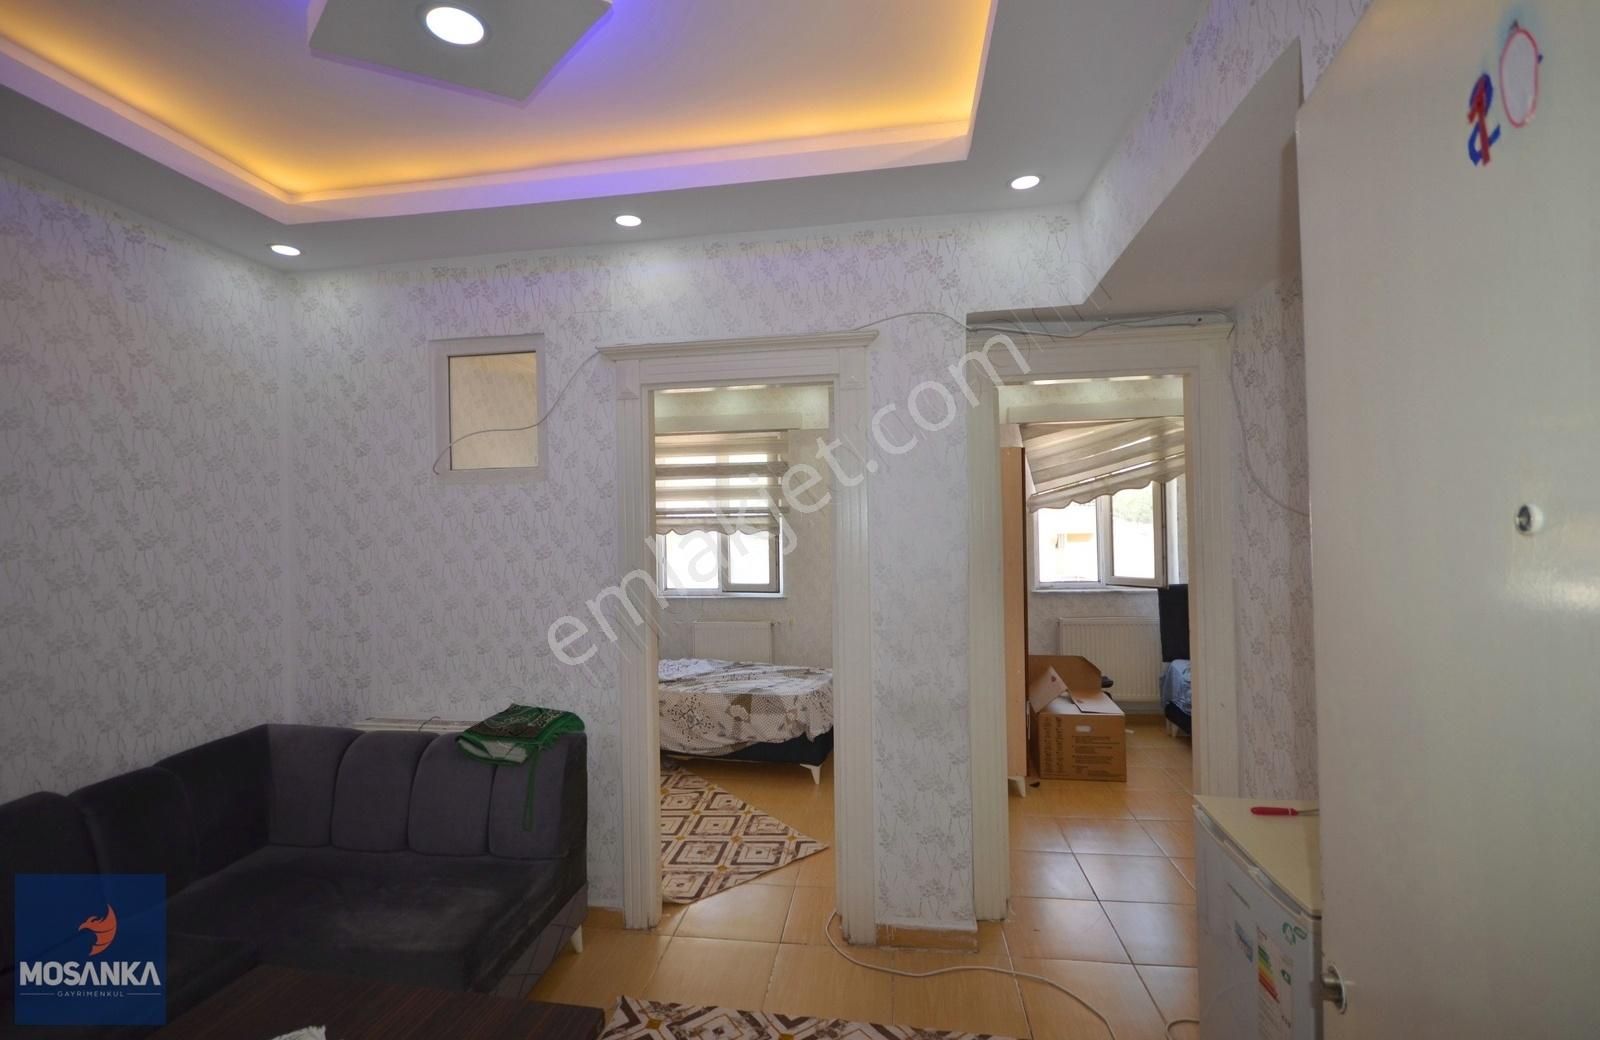 Şahinbey Yeditepe Satılık Residence MOSANKA'dan Yeditepe'de Ara Kat 2+0 Eşyalı Satılık Rezidans